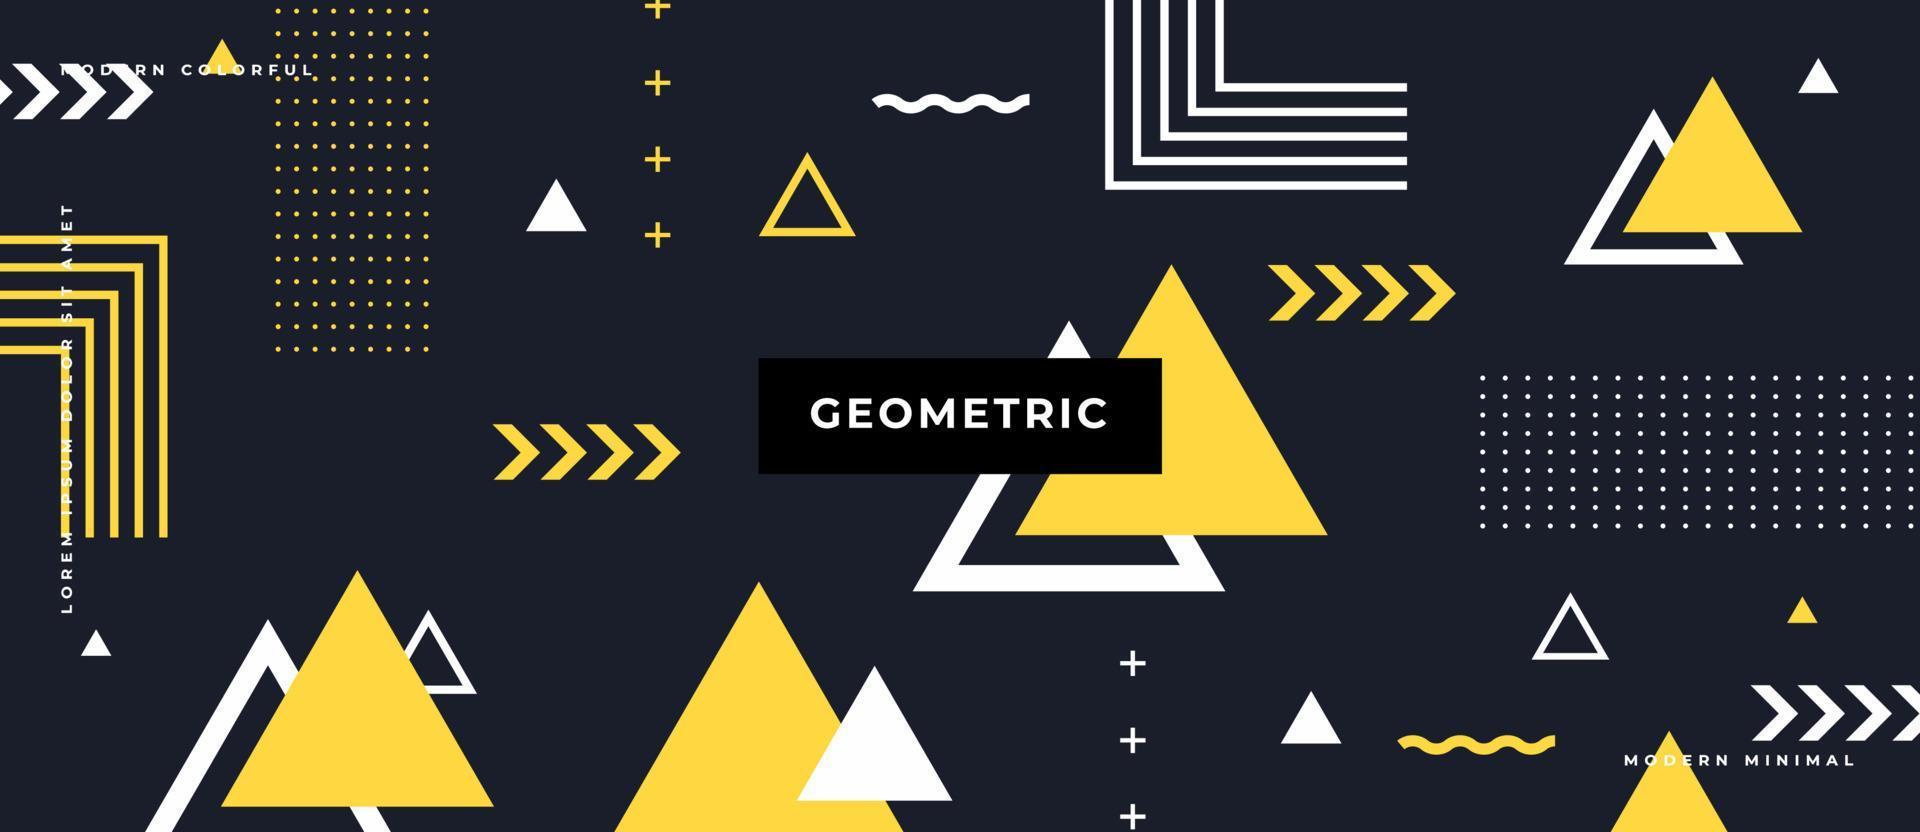 forma triangolare piatta, gialla, bianca, linea, motivo geometrico senza cuciture in movimento su sfondo nero in stile memphis. vettore